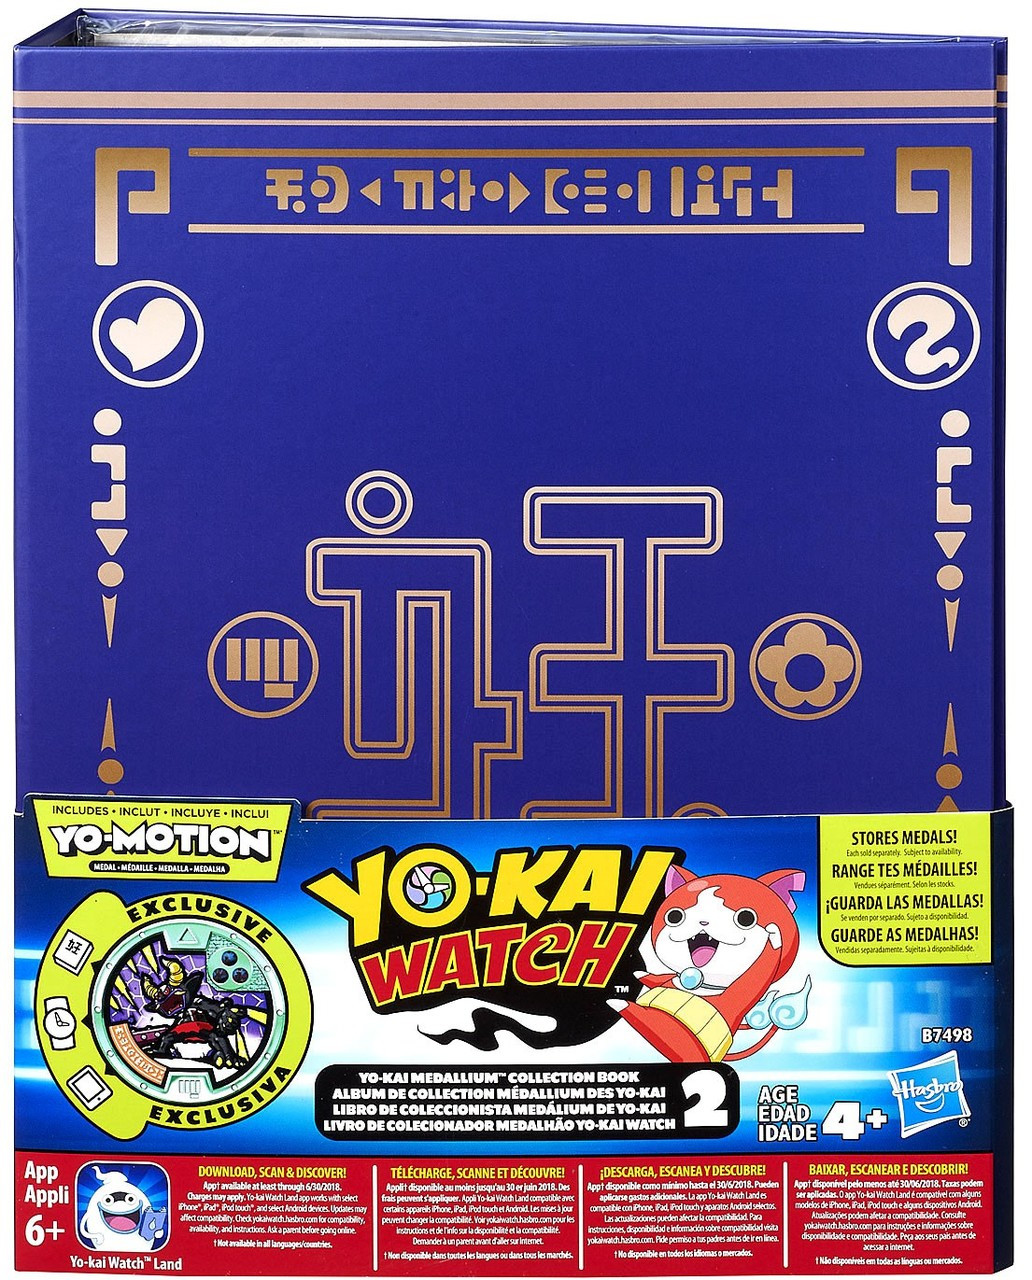 Yo-Kai Watch Season 2 Medallium Collection Set Hasbro Toys - ToyWiz